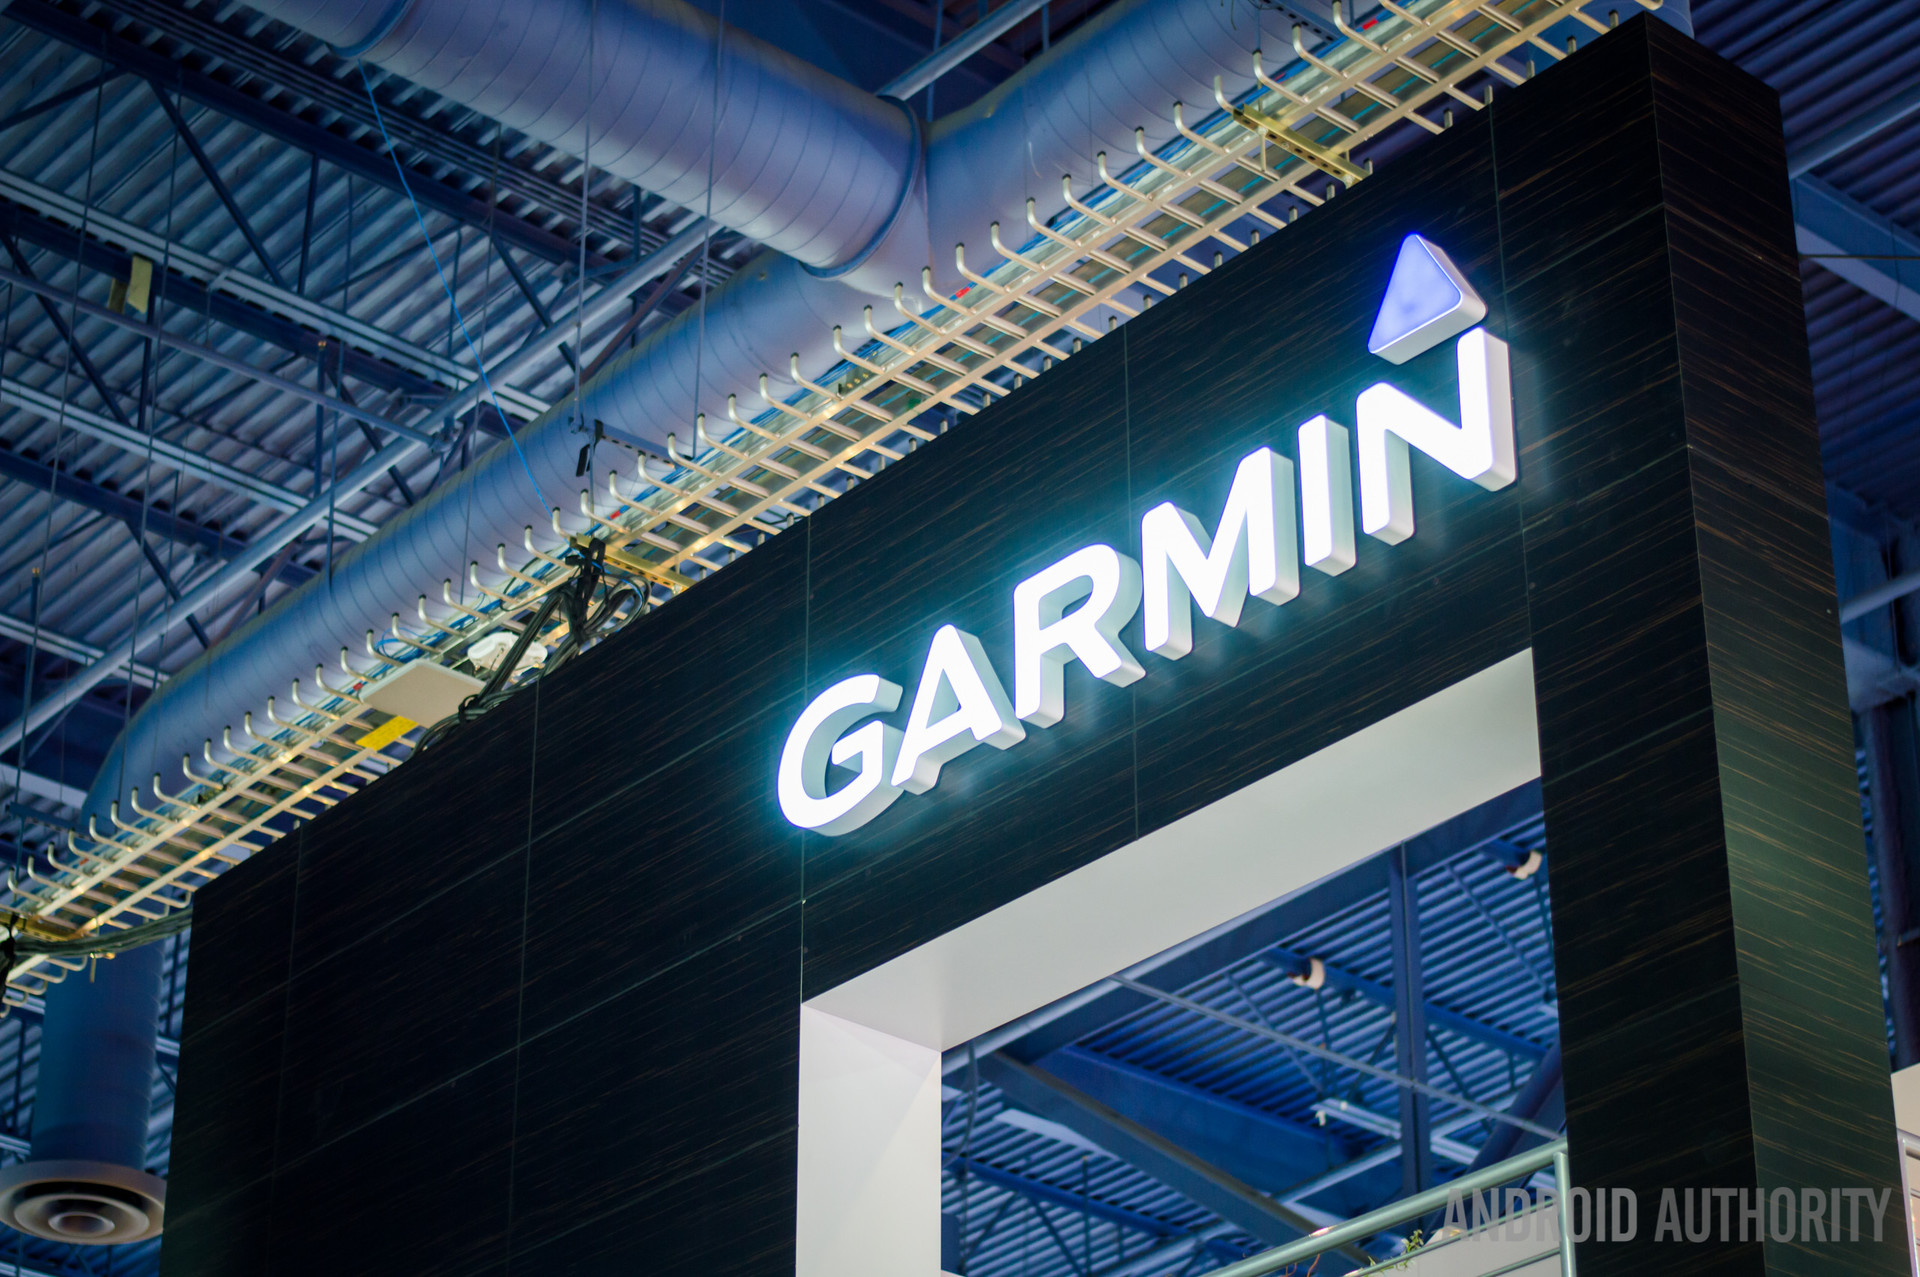 An illuminated Garmin logo shines above an entryway.